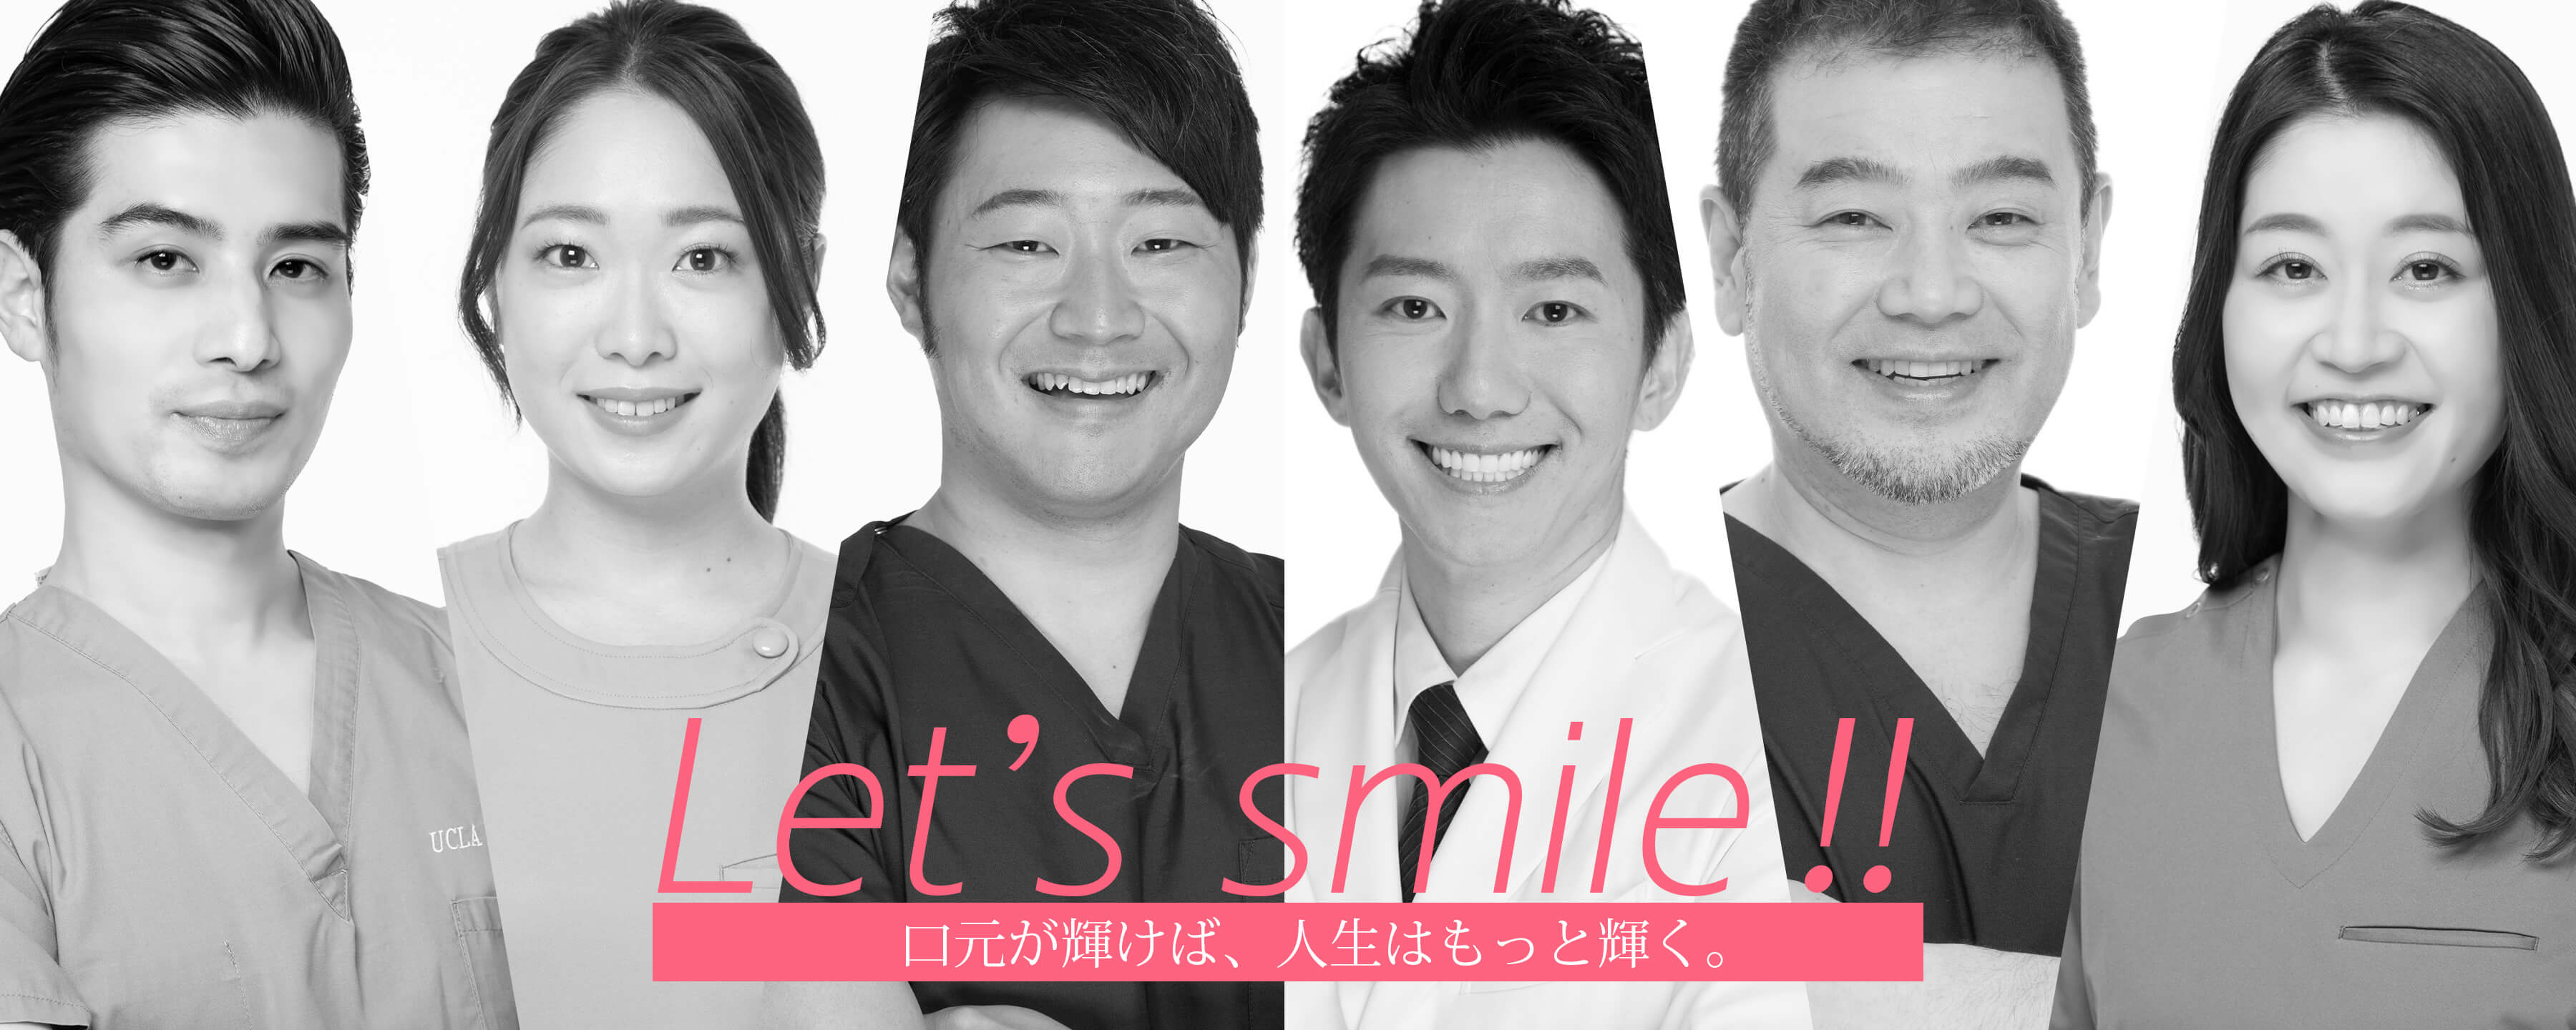 let's smile!! 口元が輝けば、人生はもっと輝く